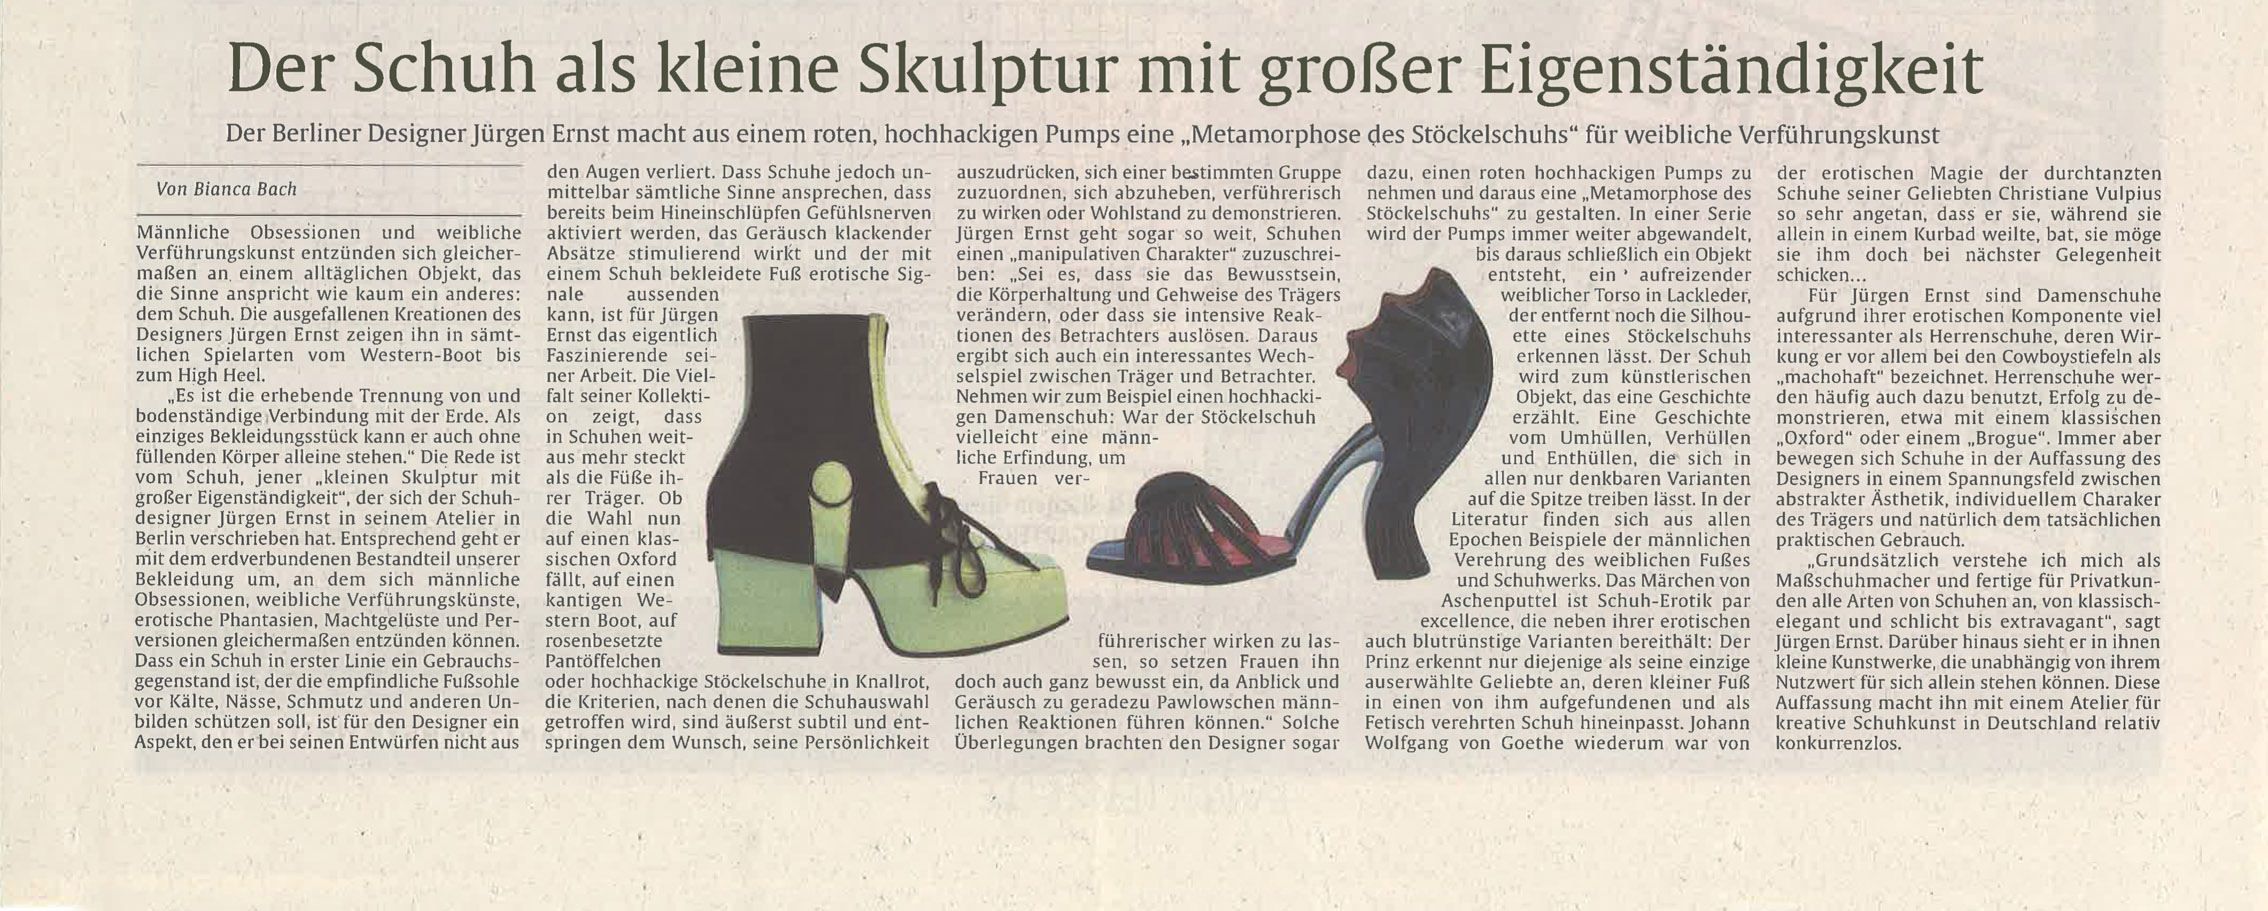 Jürgen Ernst - Der Herr Der Schuhe - 1999 Stuttgarter Zeitung - Metamorphose der Stöckelschuhs